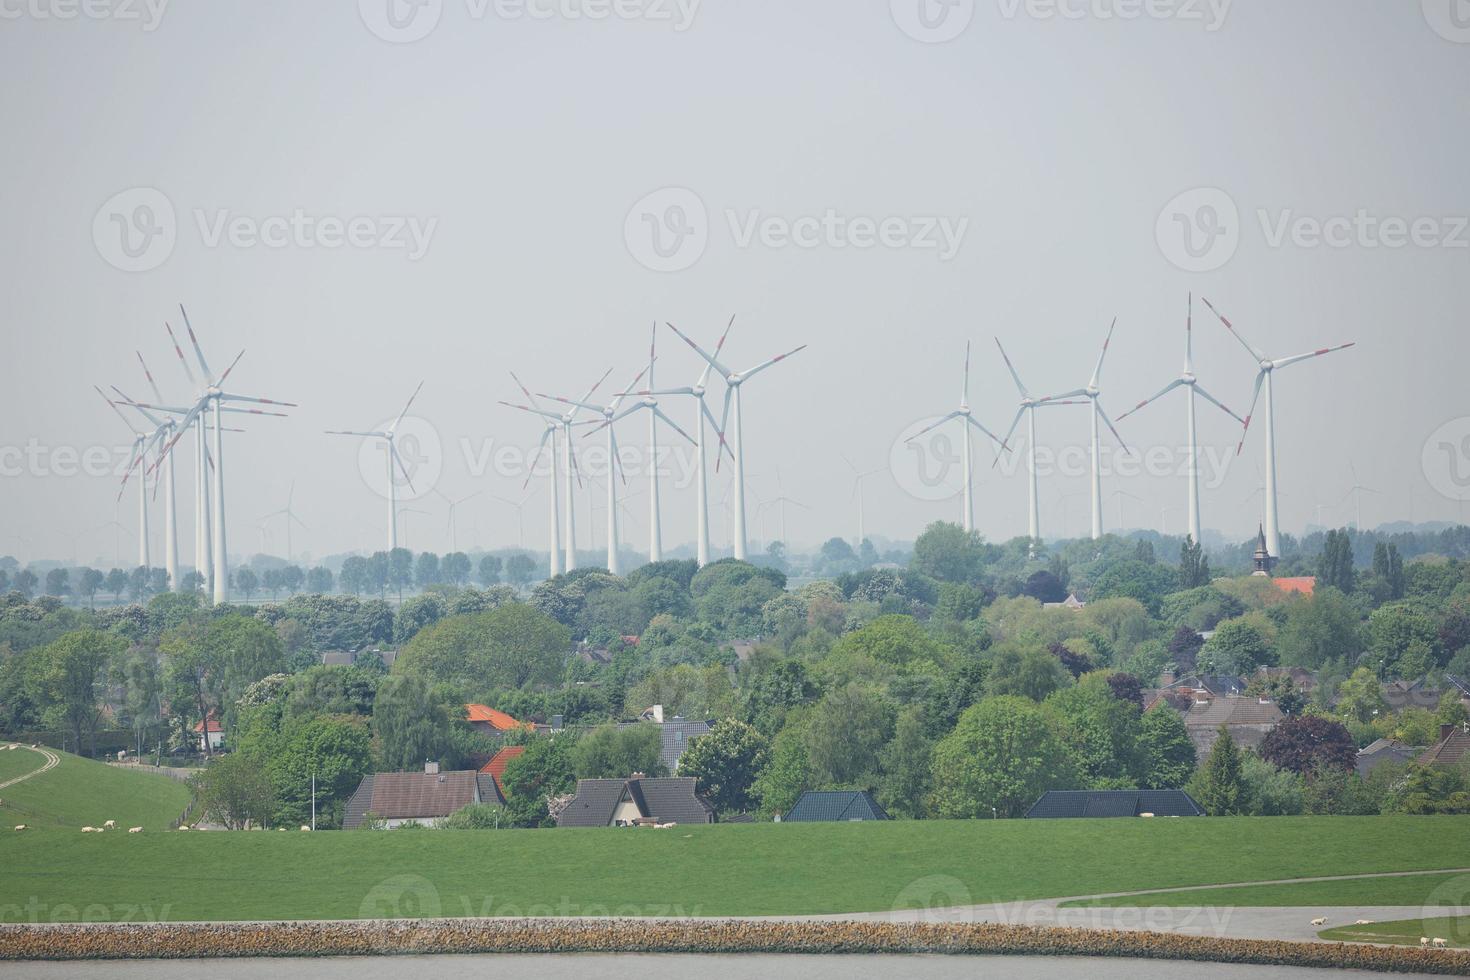 mulini a vento, centrale elettrica e turbine vicino al canale di kiel in germania foto